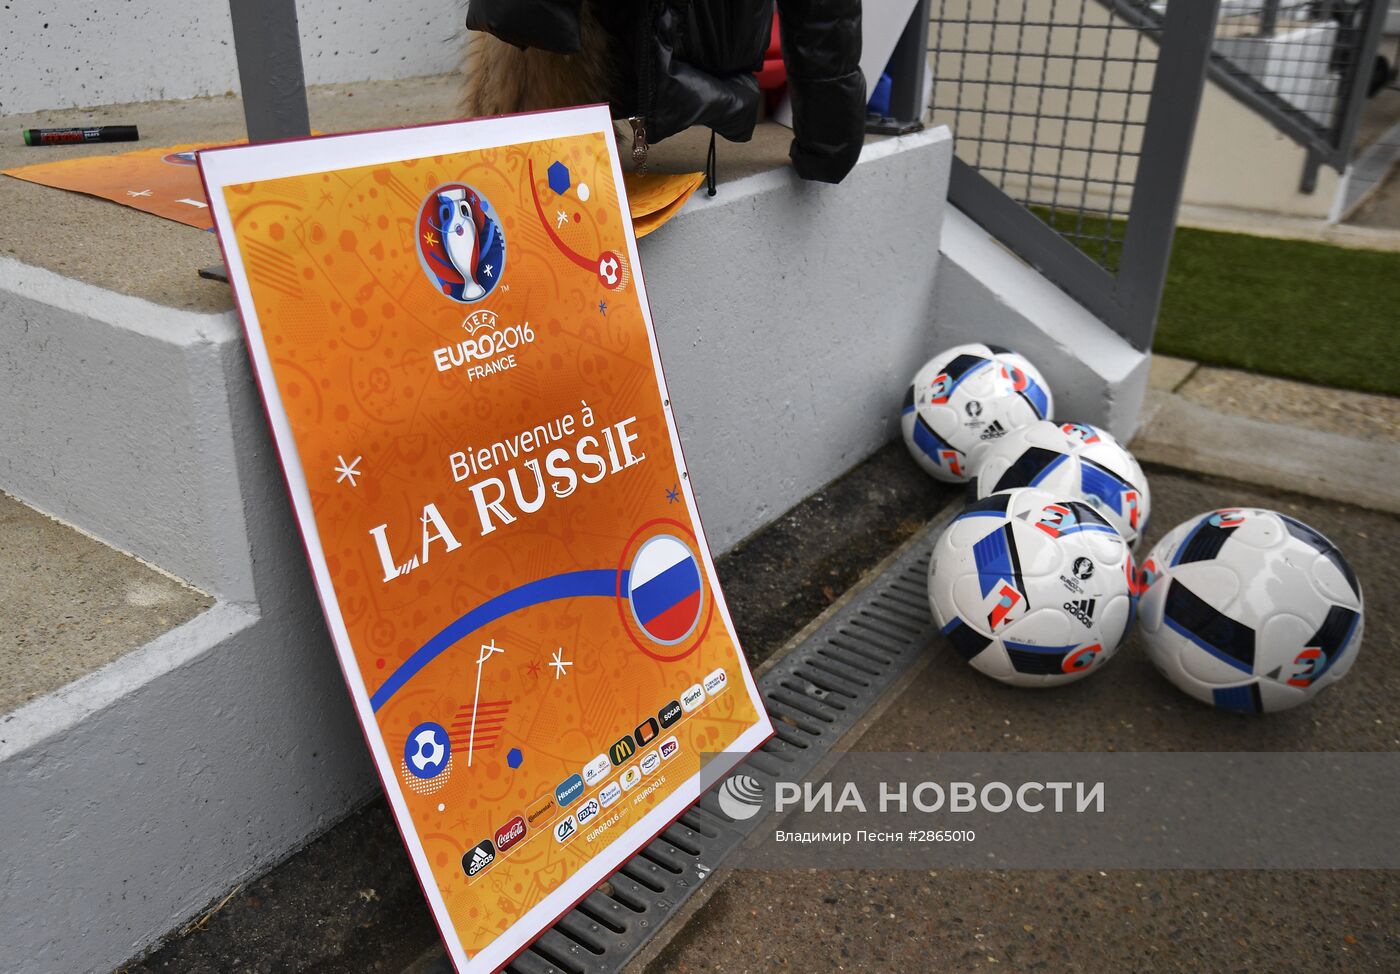 Футбол. Тренировка сборной России перед Евро-2016